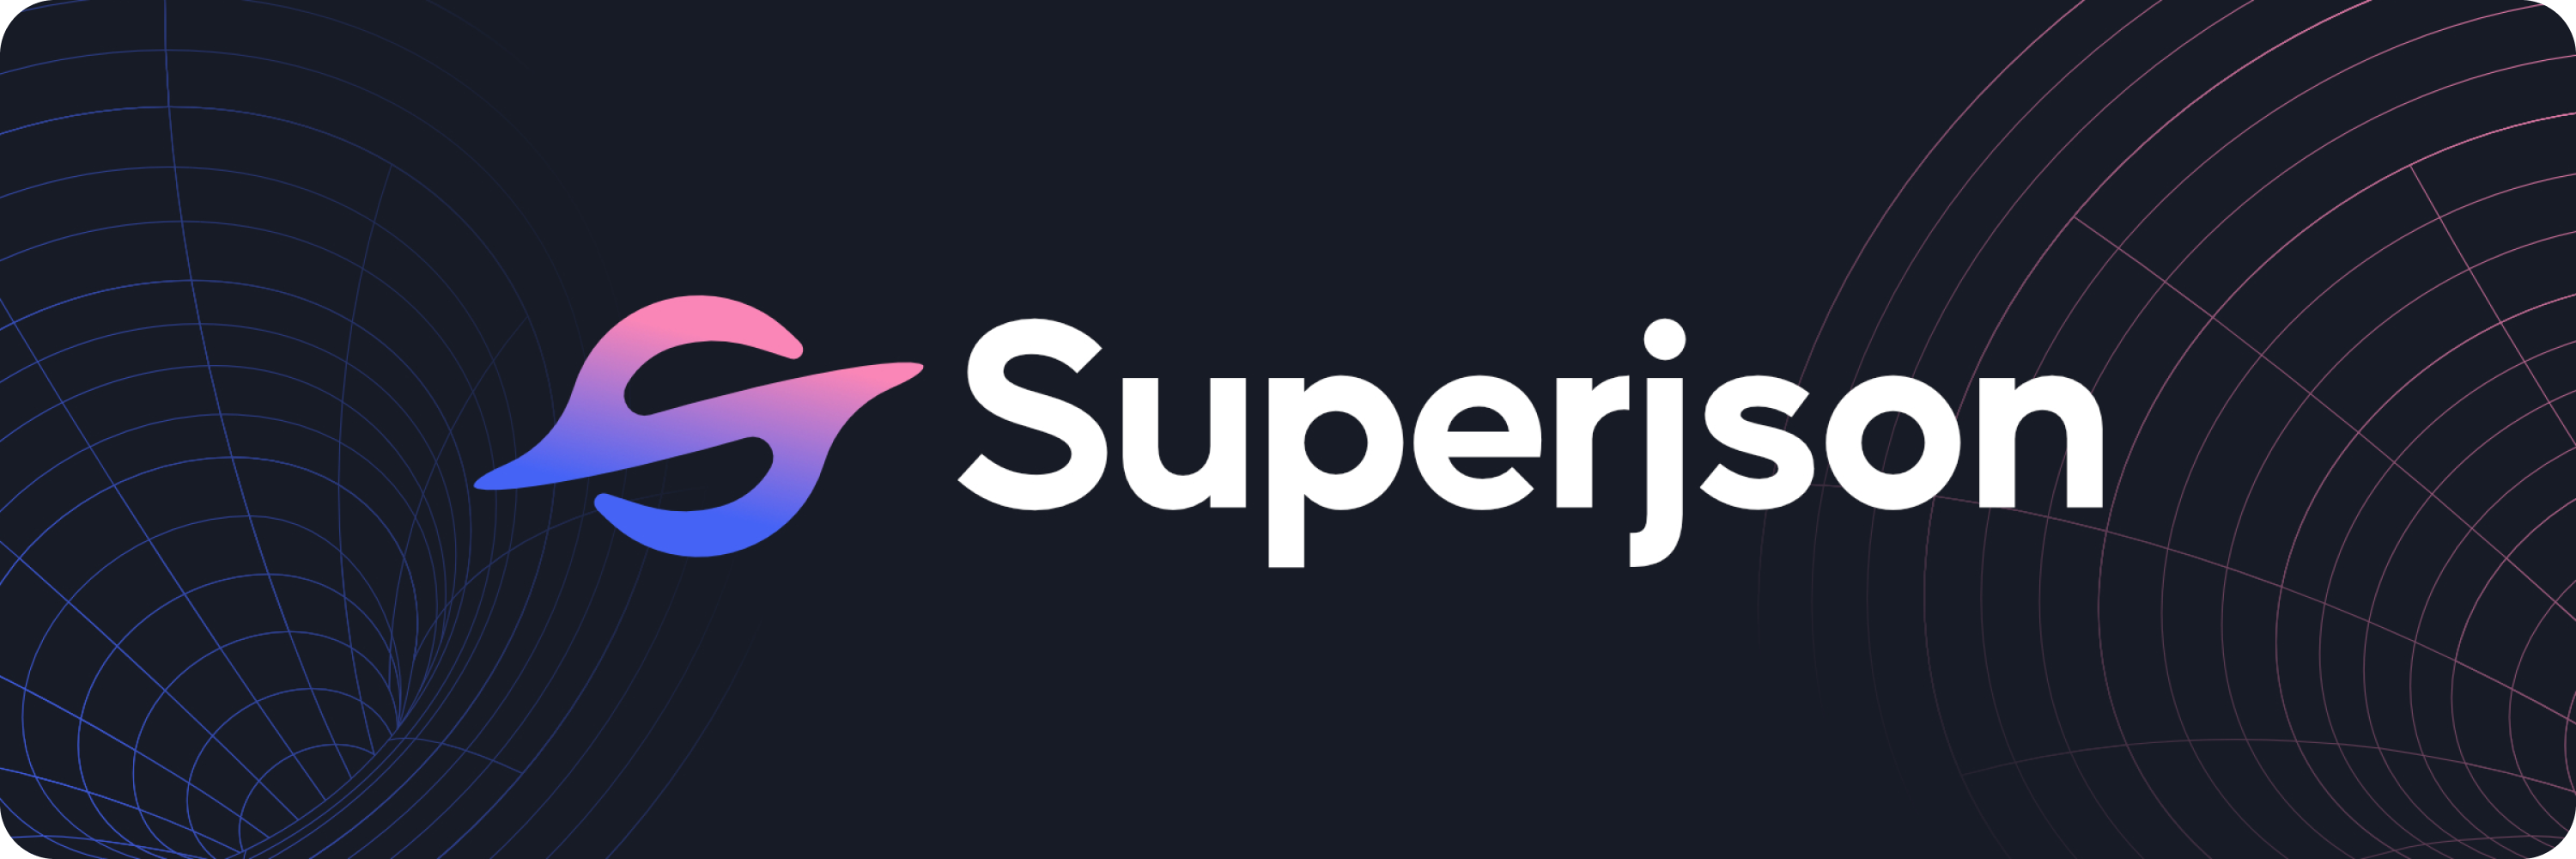 superjson-banner.png